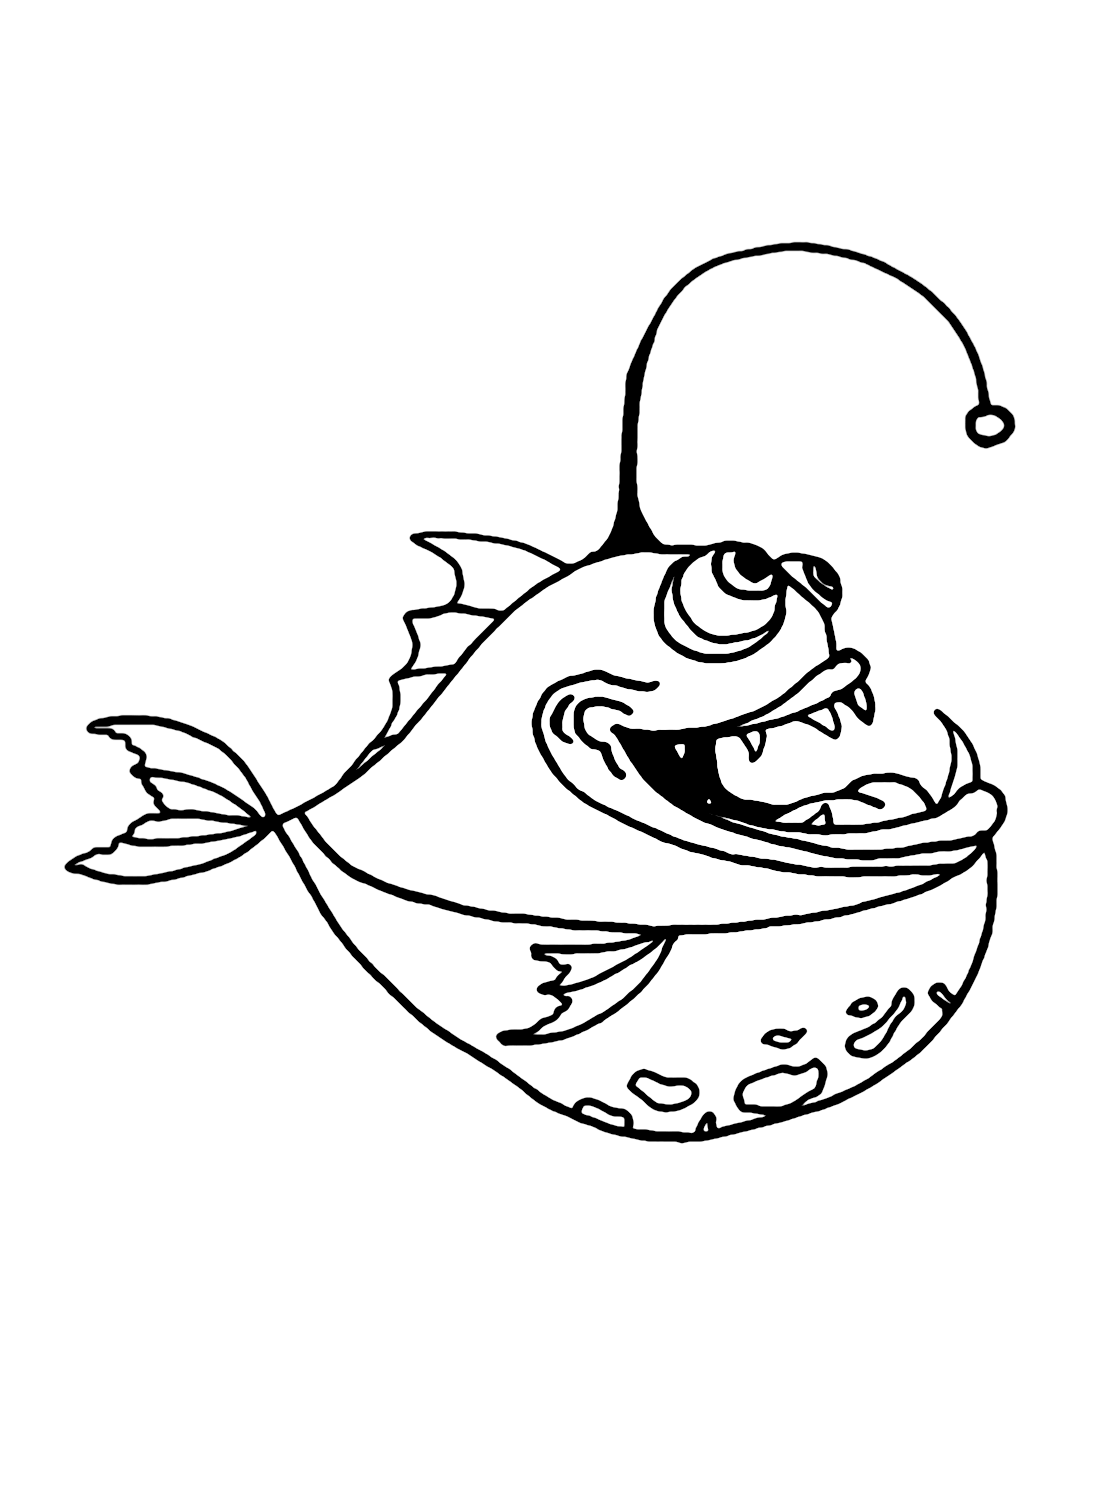 Funny Anglerfish from Anglerfish